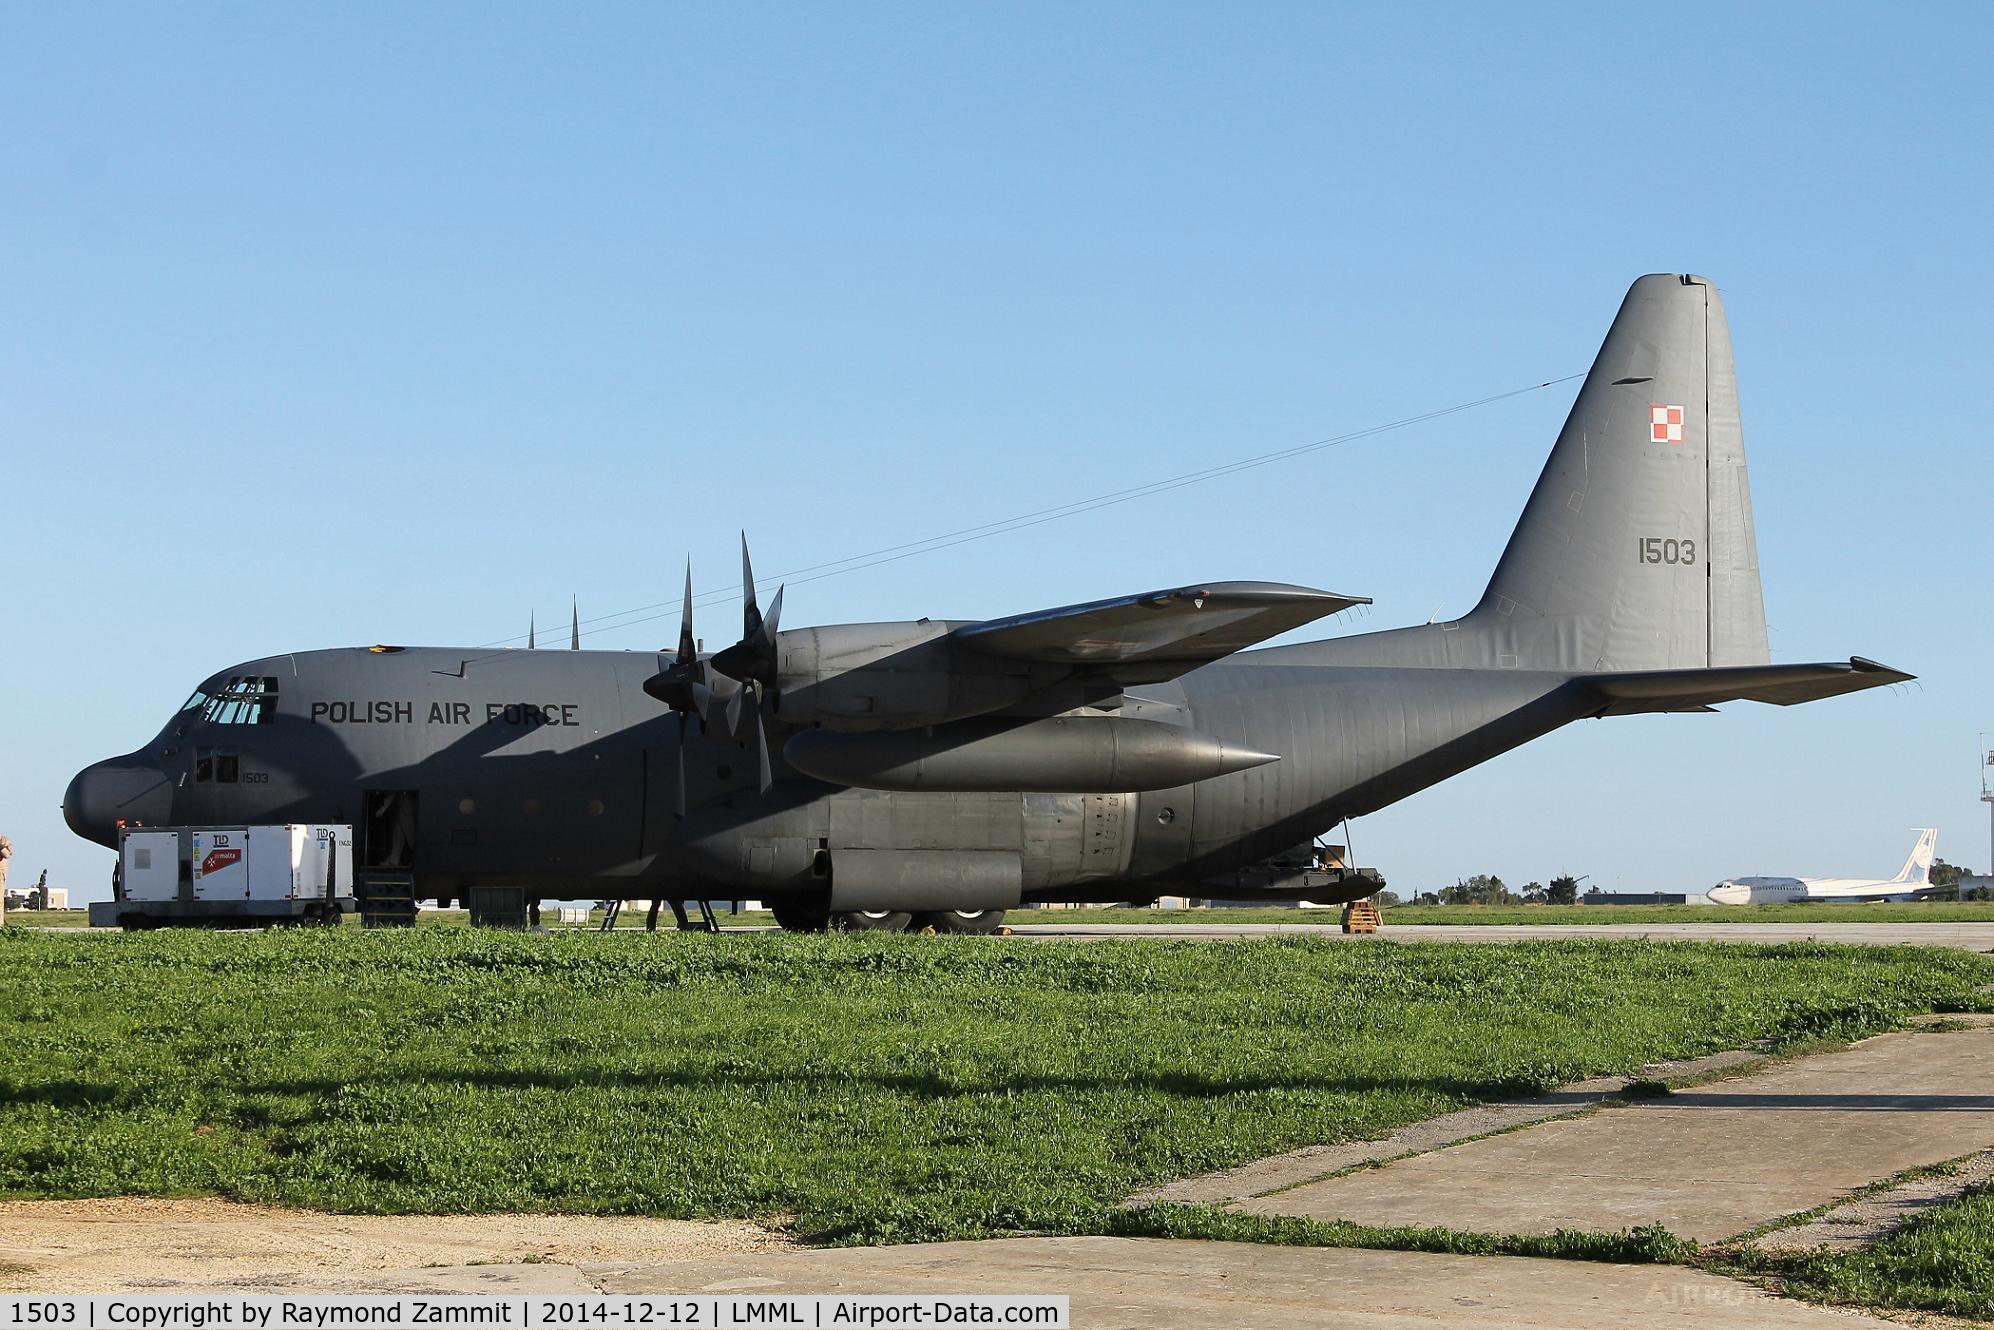 1503, 1972 Lockheed C-130E Hercules C/N 382-4426, Lockheed C-130E Hercules 1503 Polish Air Force